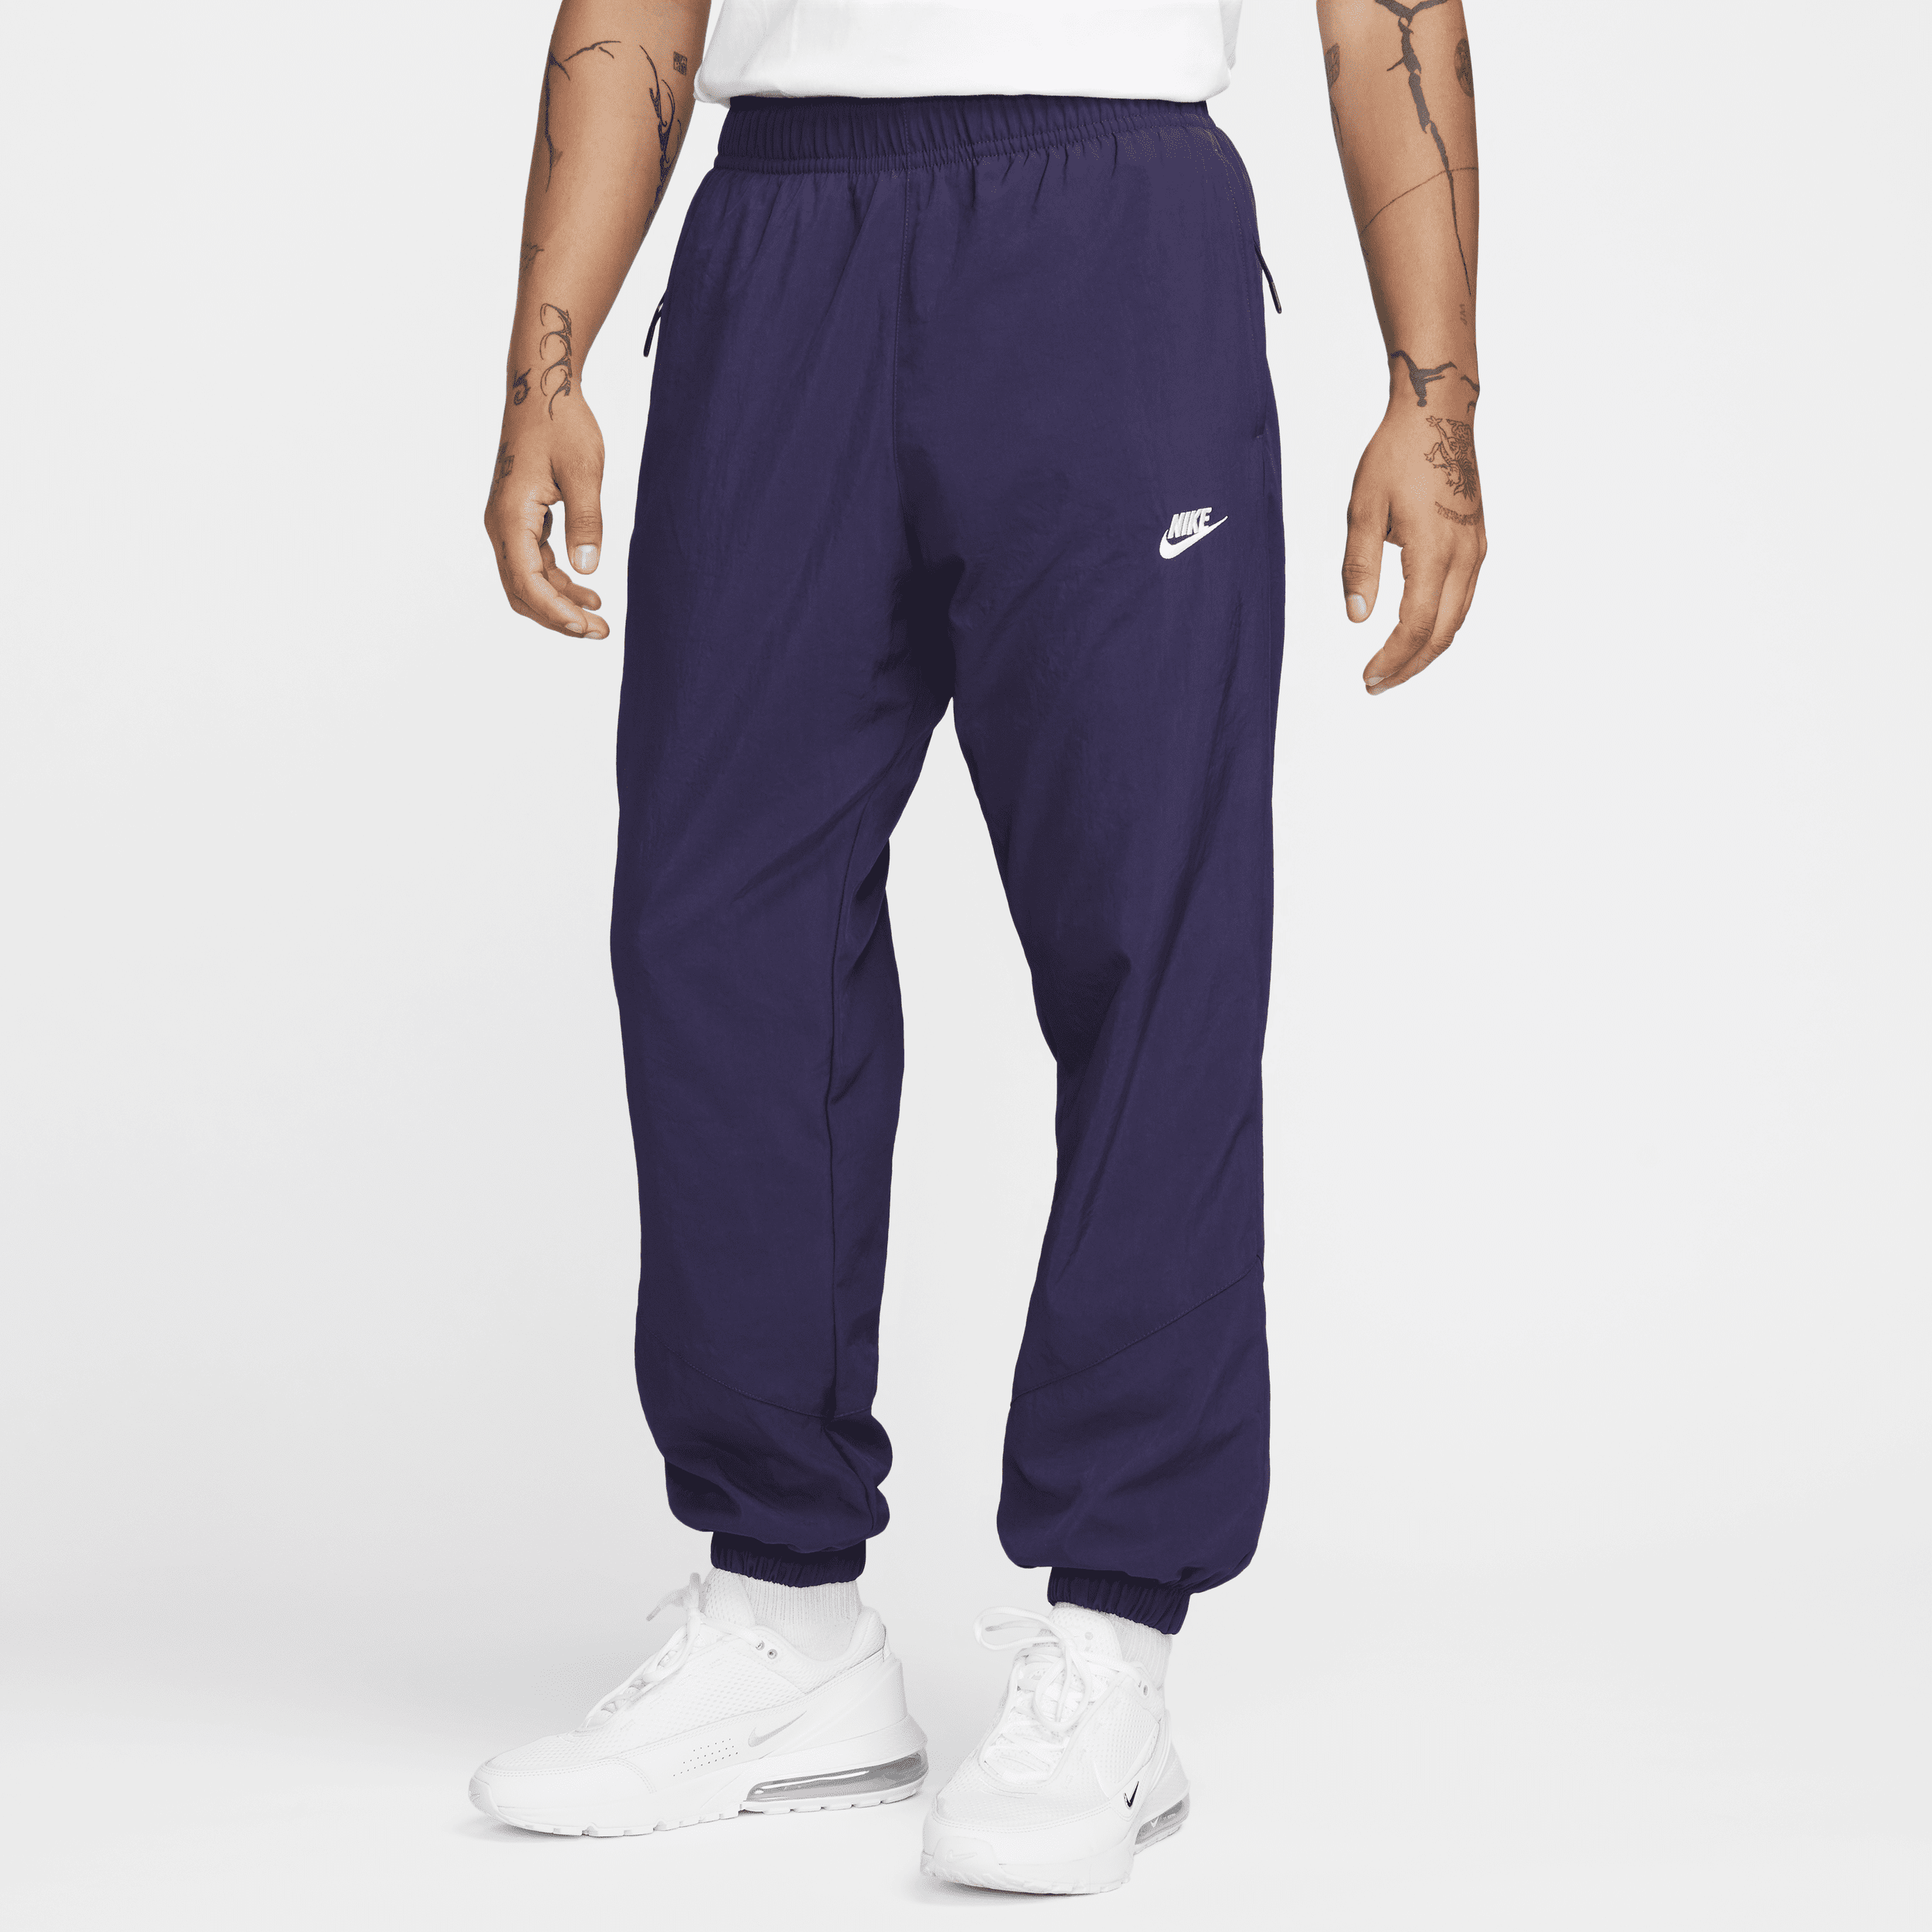 Nike Windrunner Pantalón de tejido Woven para el invierno - Hombre - Morado